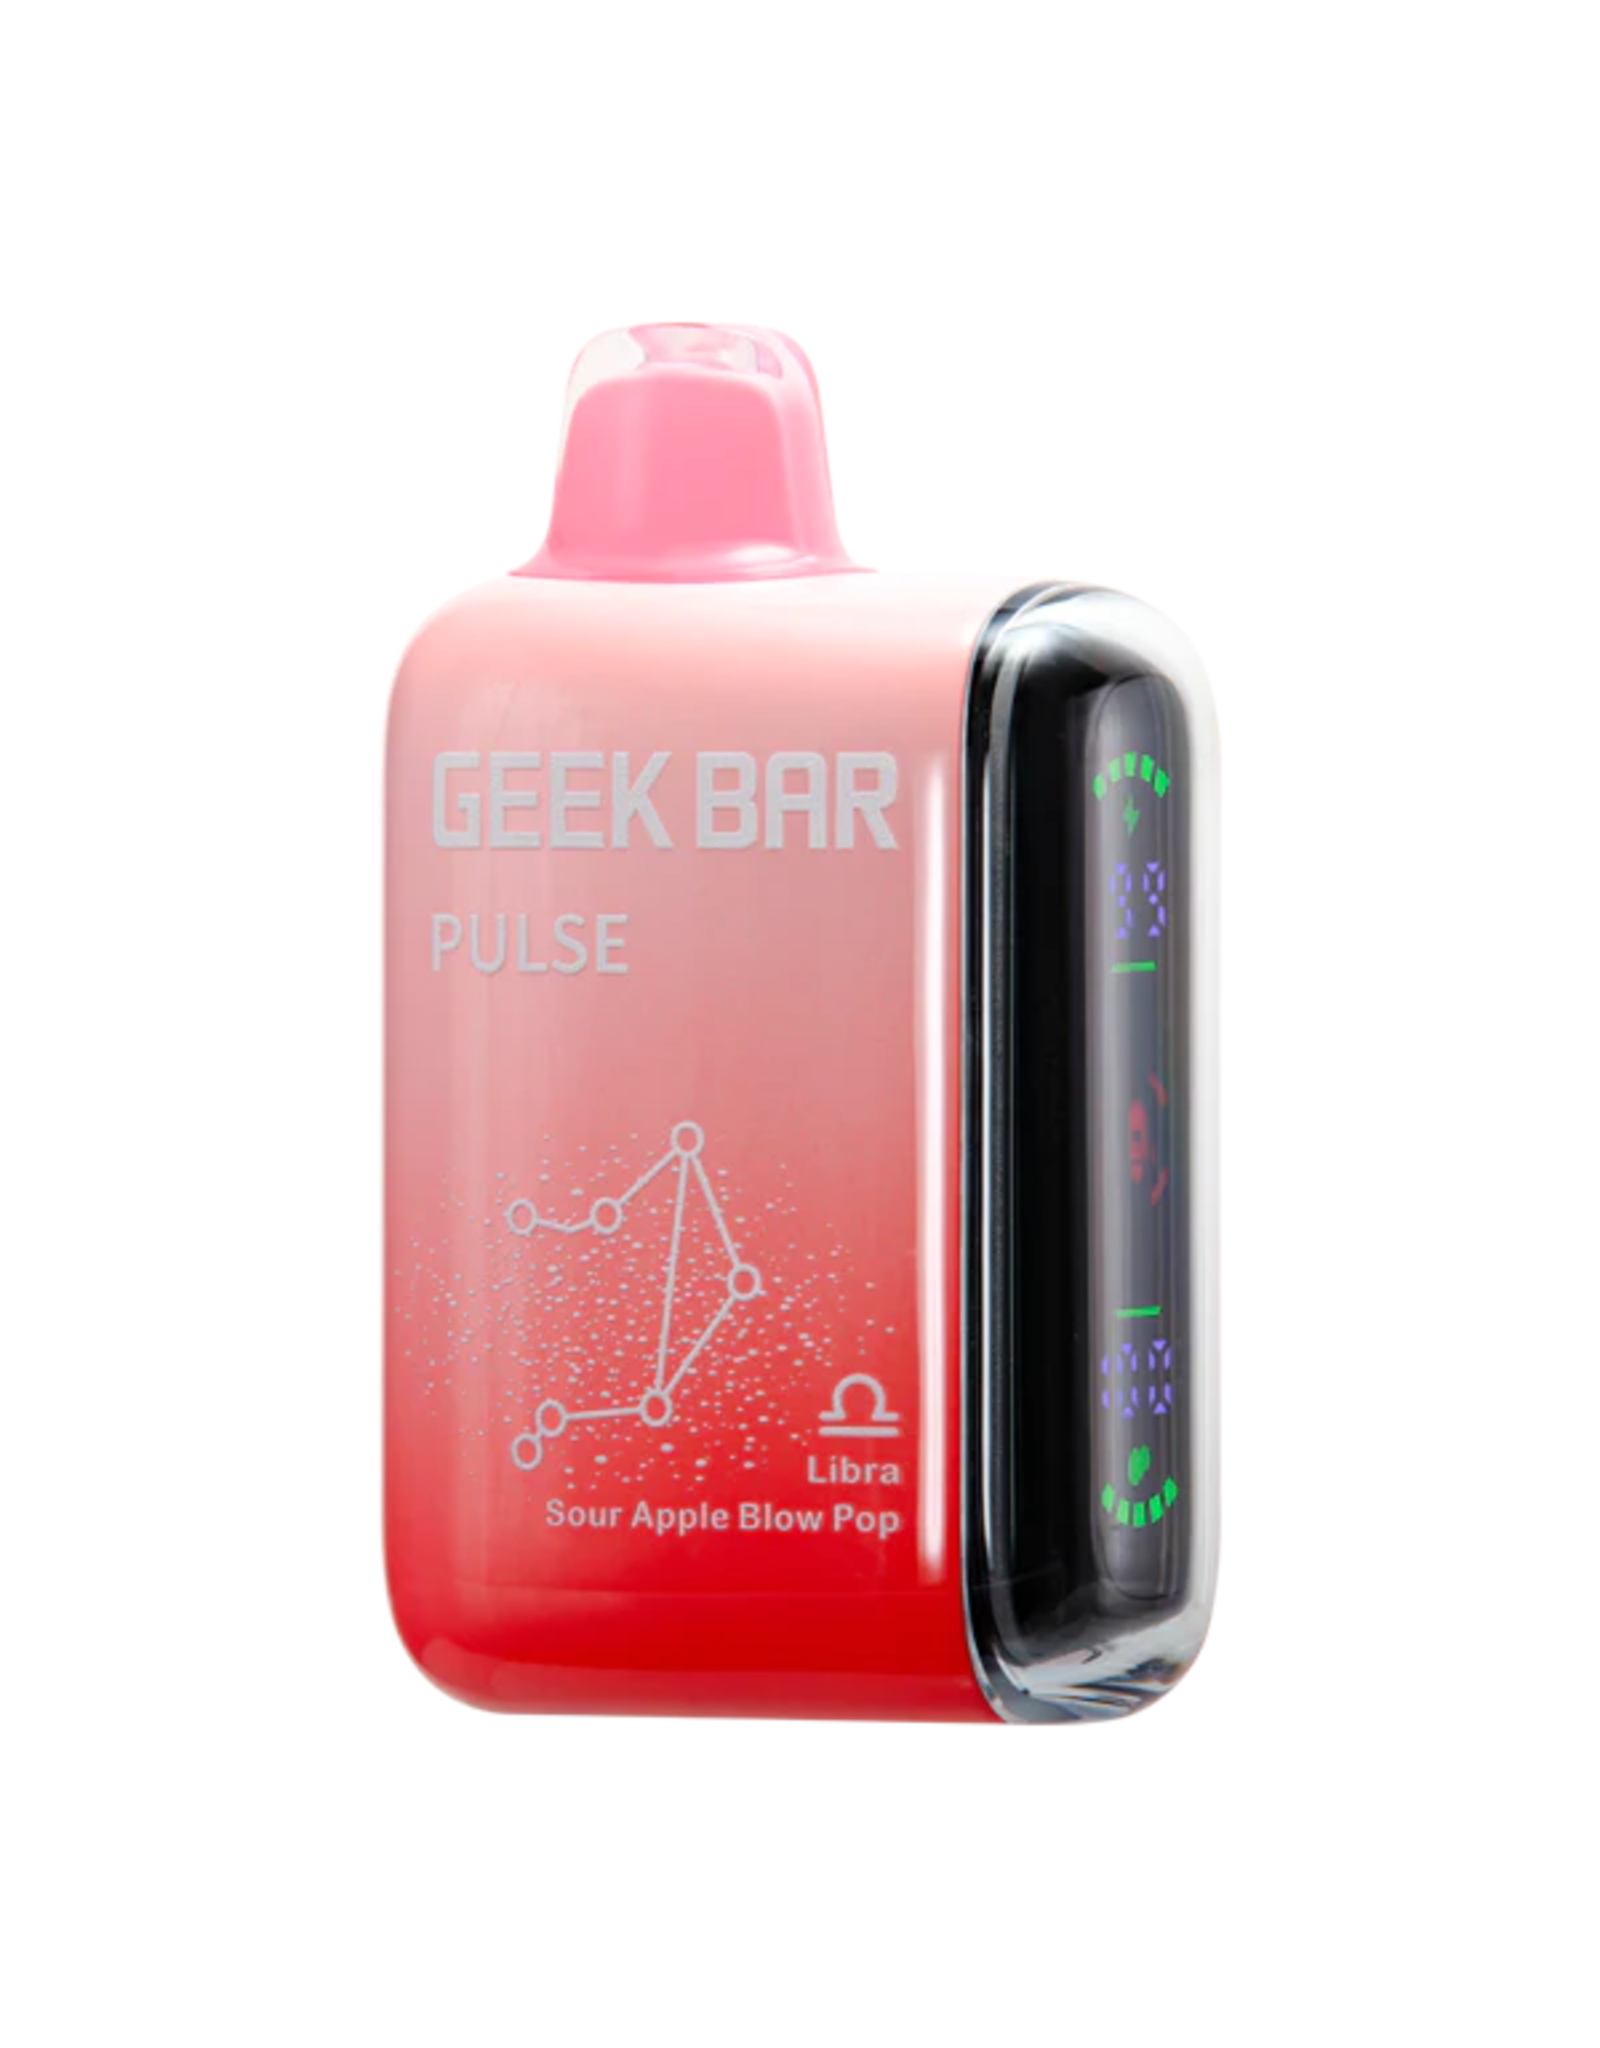 Geek Bar Geek Bar Pulse 10000 Puffs-Sour Apple Blow Pop-(Libra)